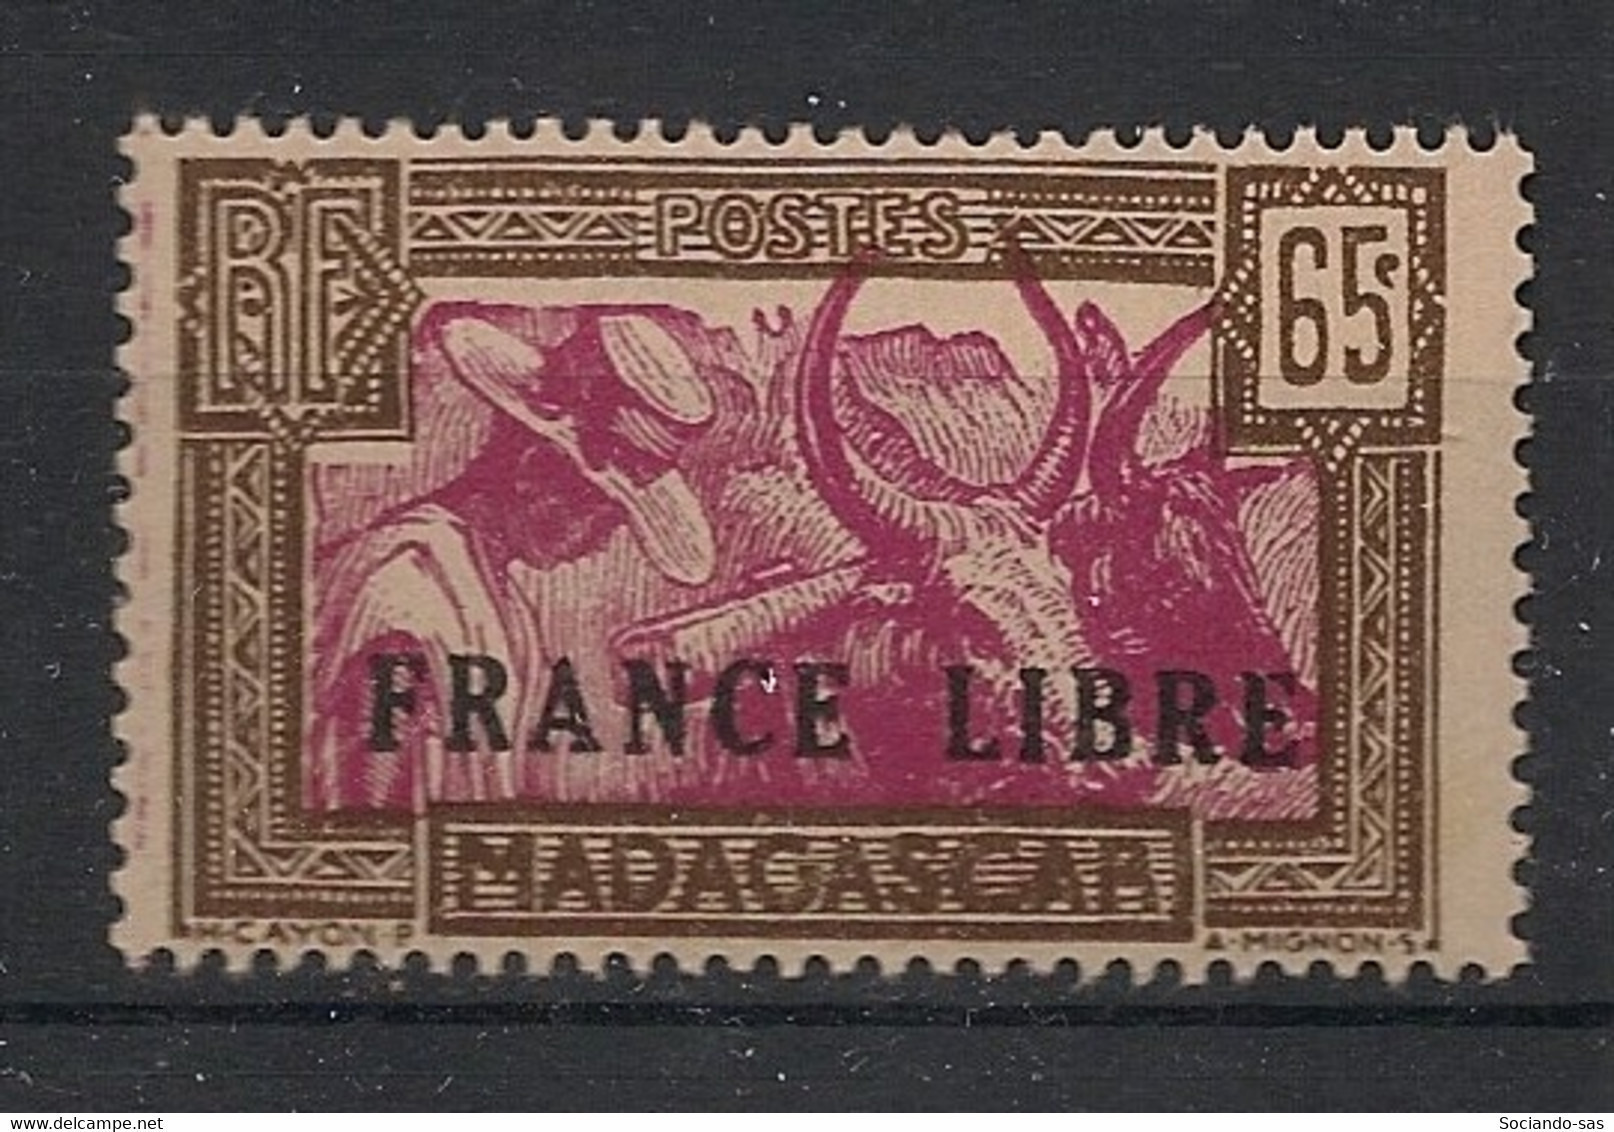 MADAGASCAR - 1942 - N°YT. 236 - France Libre - Neuf GC** / MNH / Postfrisch - Ongebruikt